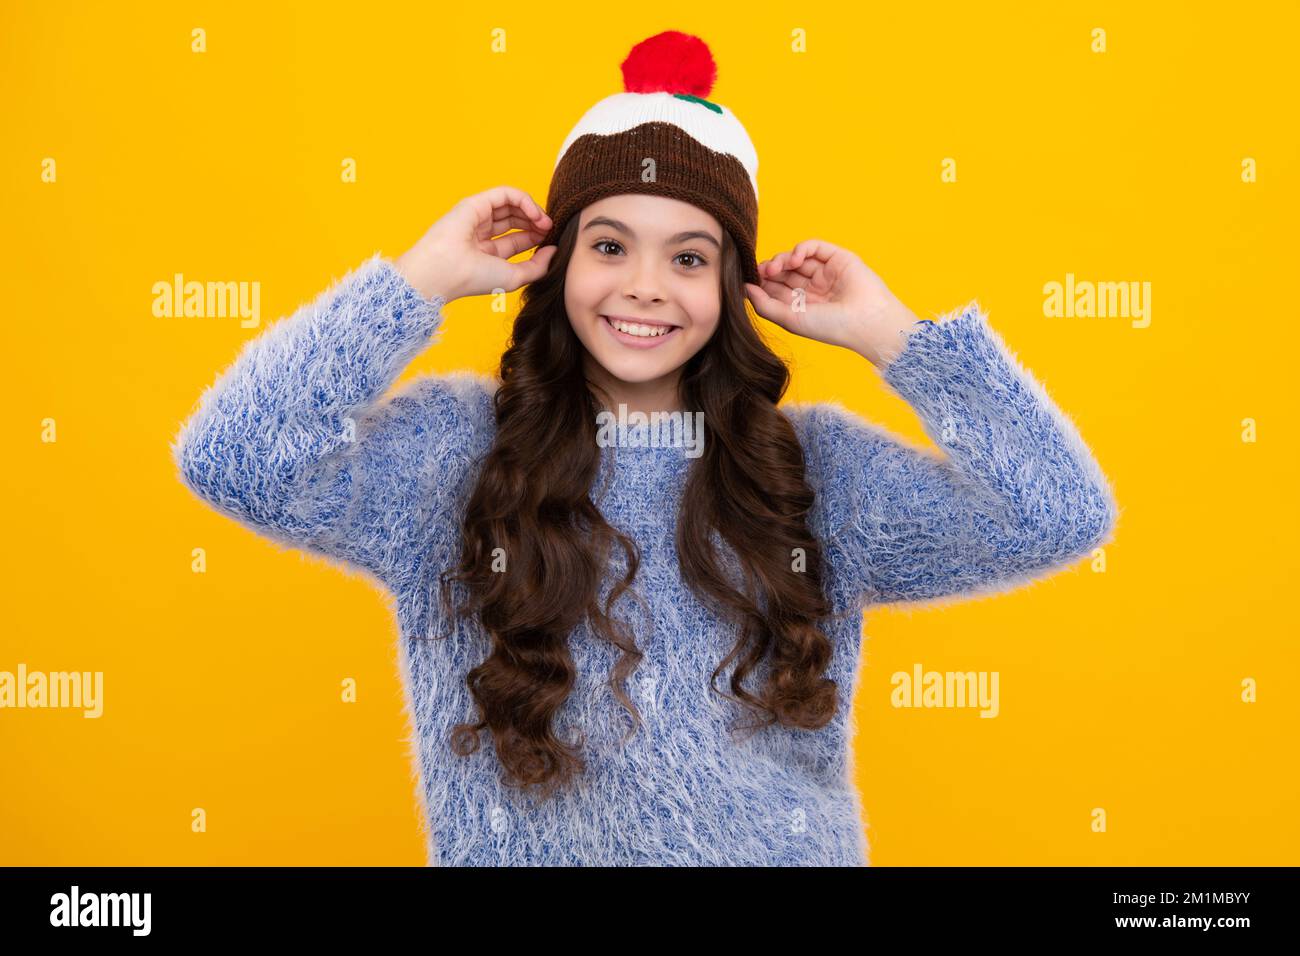 Bel ritratto invernale per bambini. Ragazza adolescente in posa con maglione invernale e cappello a maglia su sfondo giallo. Felice adolescente, positivo e sorridente Foto Stock